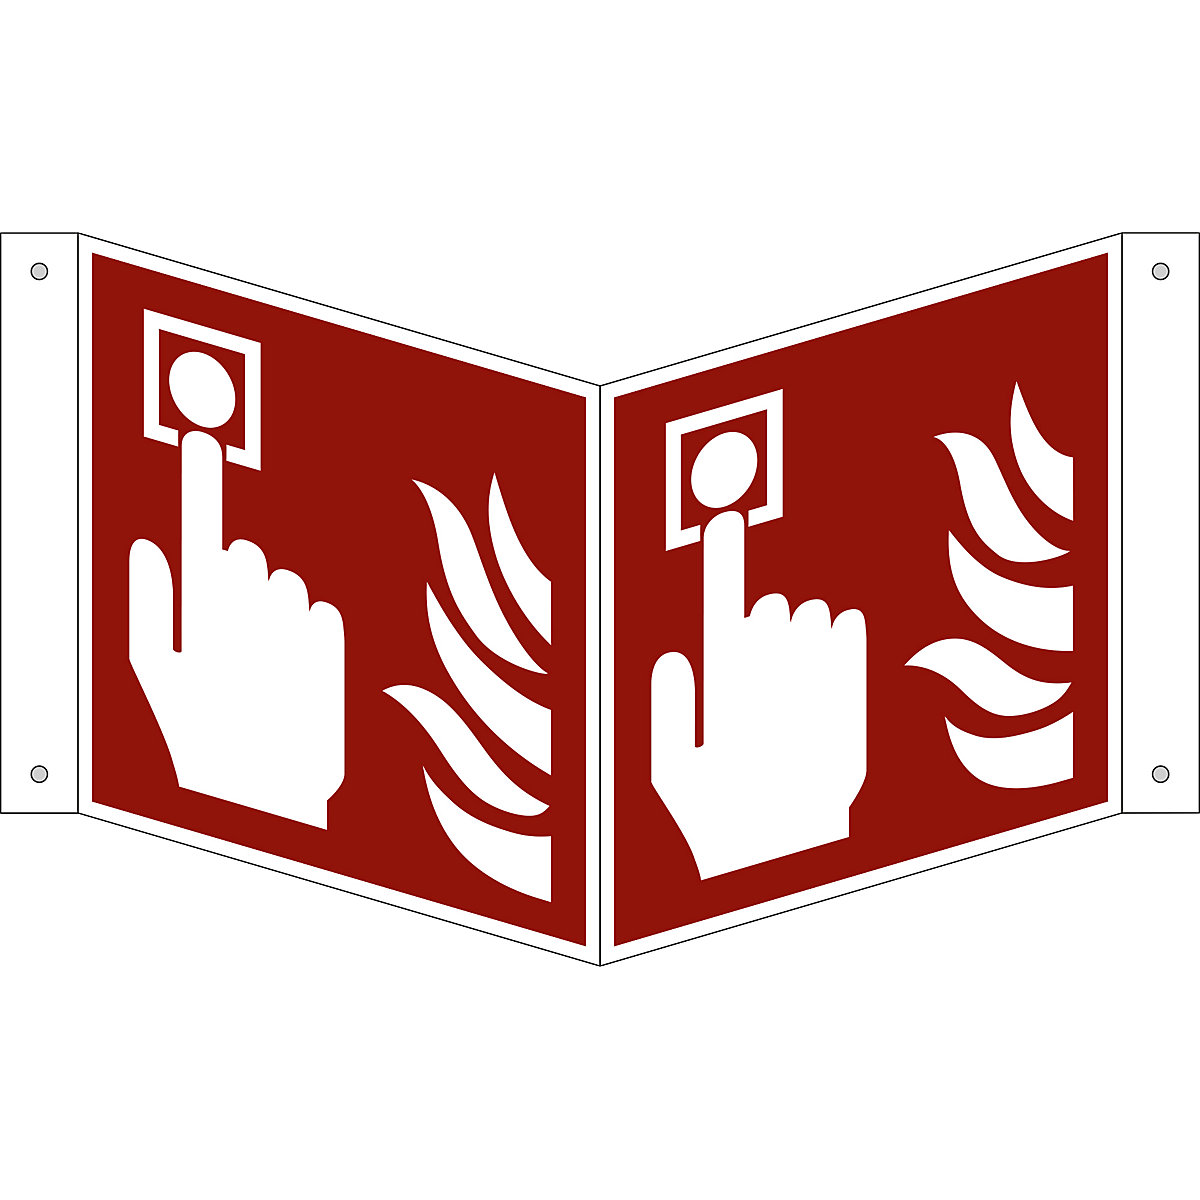 Značka pro ochranu proti požáru, požární hlásič, bal.j. 10 ks, hliník, vysunutý štítek, 150 x 150 mm